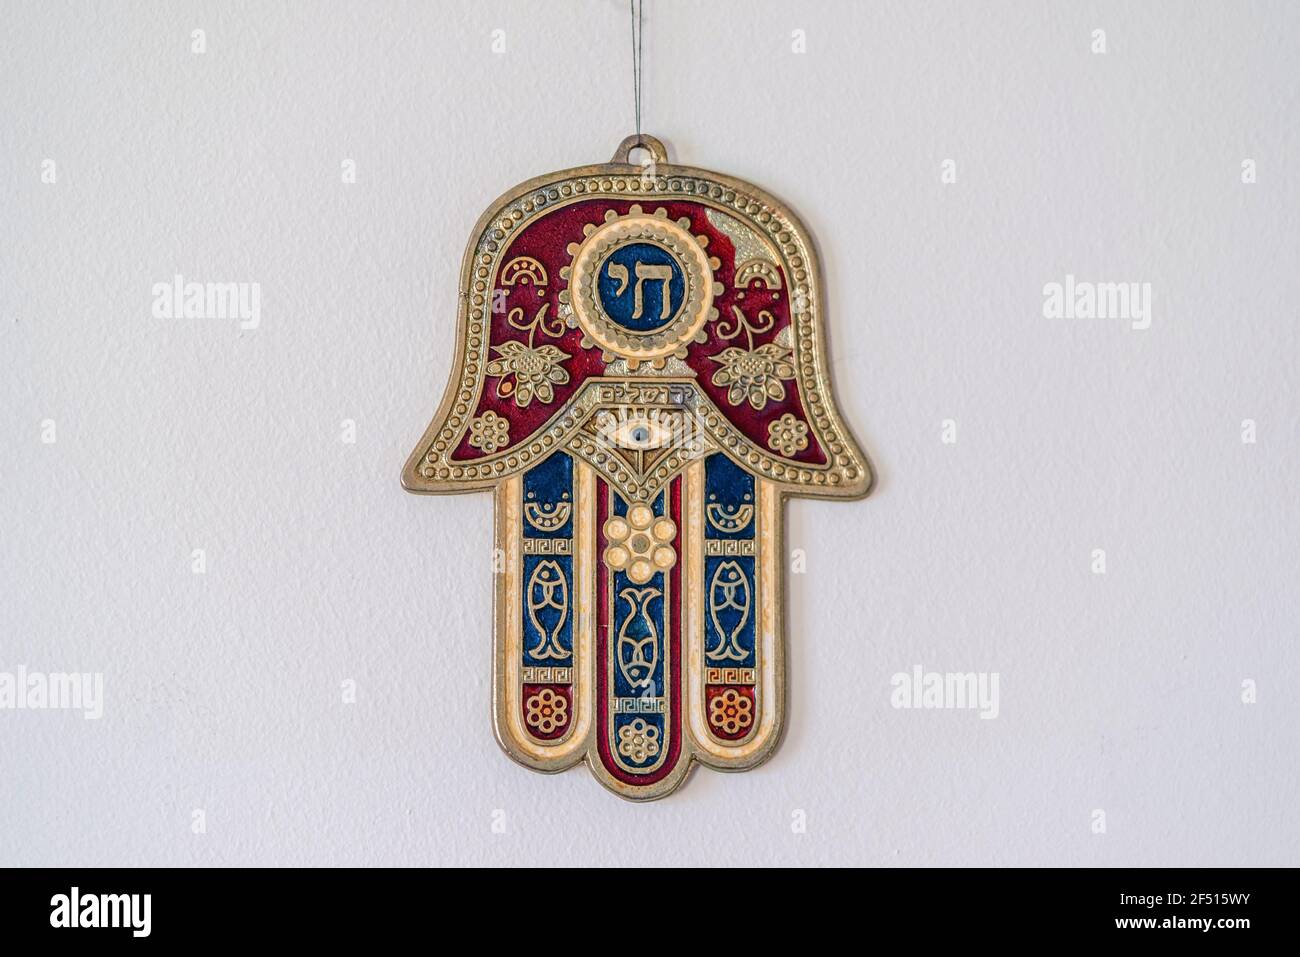 Hamsa Ebraica o Khamsa - mano di Dio, un simbolo medio-orientale per la fortuna che pende da un muro Foto Stock